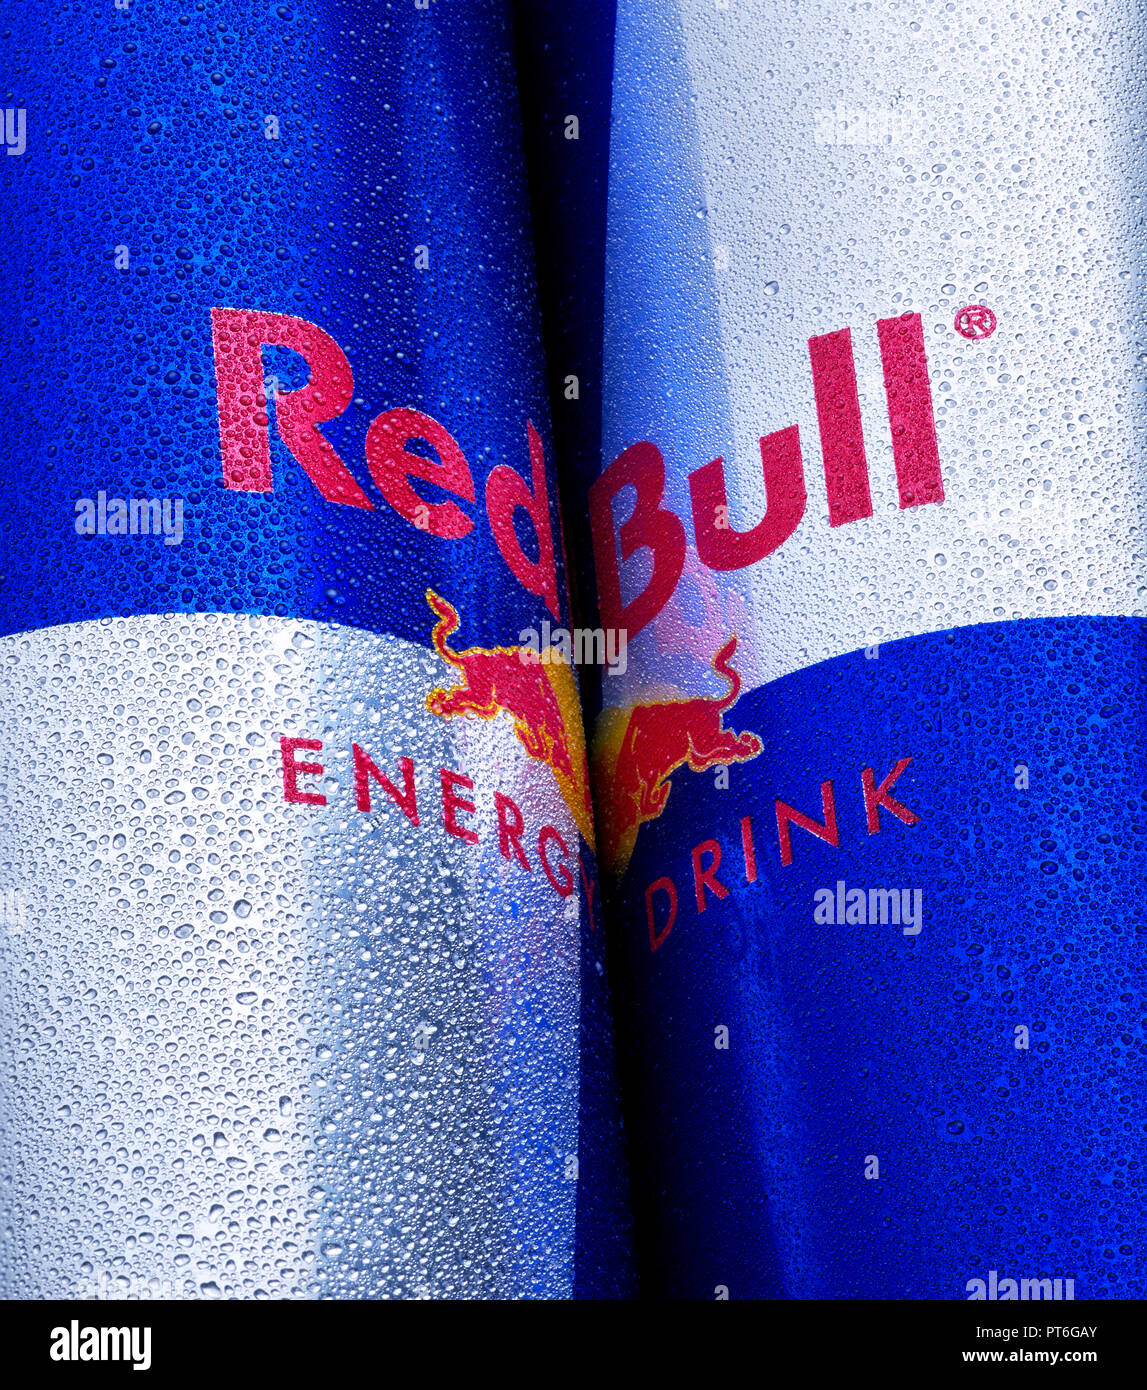 In der Nähe von Red Bull Logo auf einem Können, verschwitzt, Nass, Drip Drop, Kondensation Stockfoto